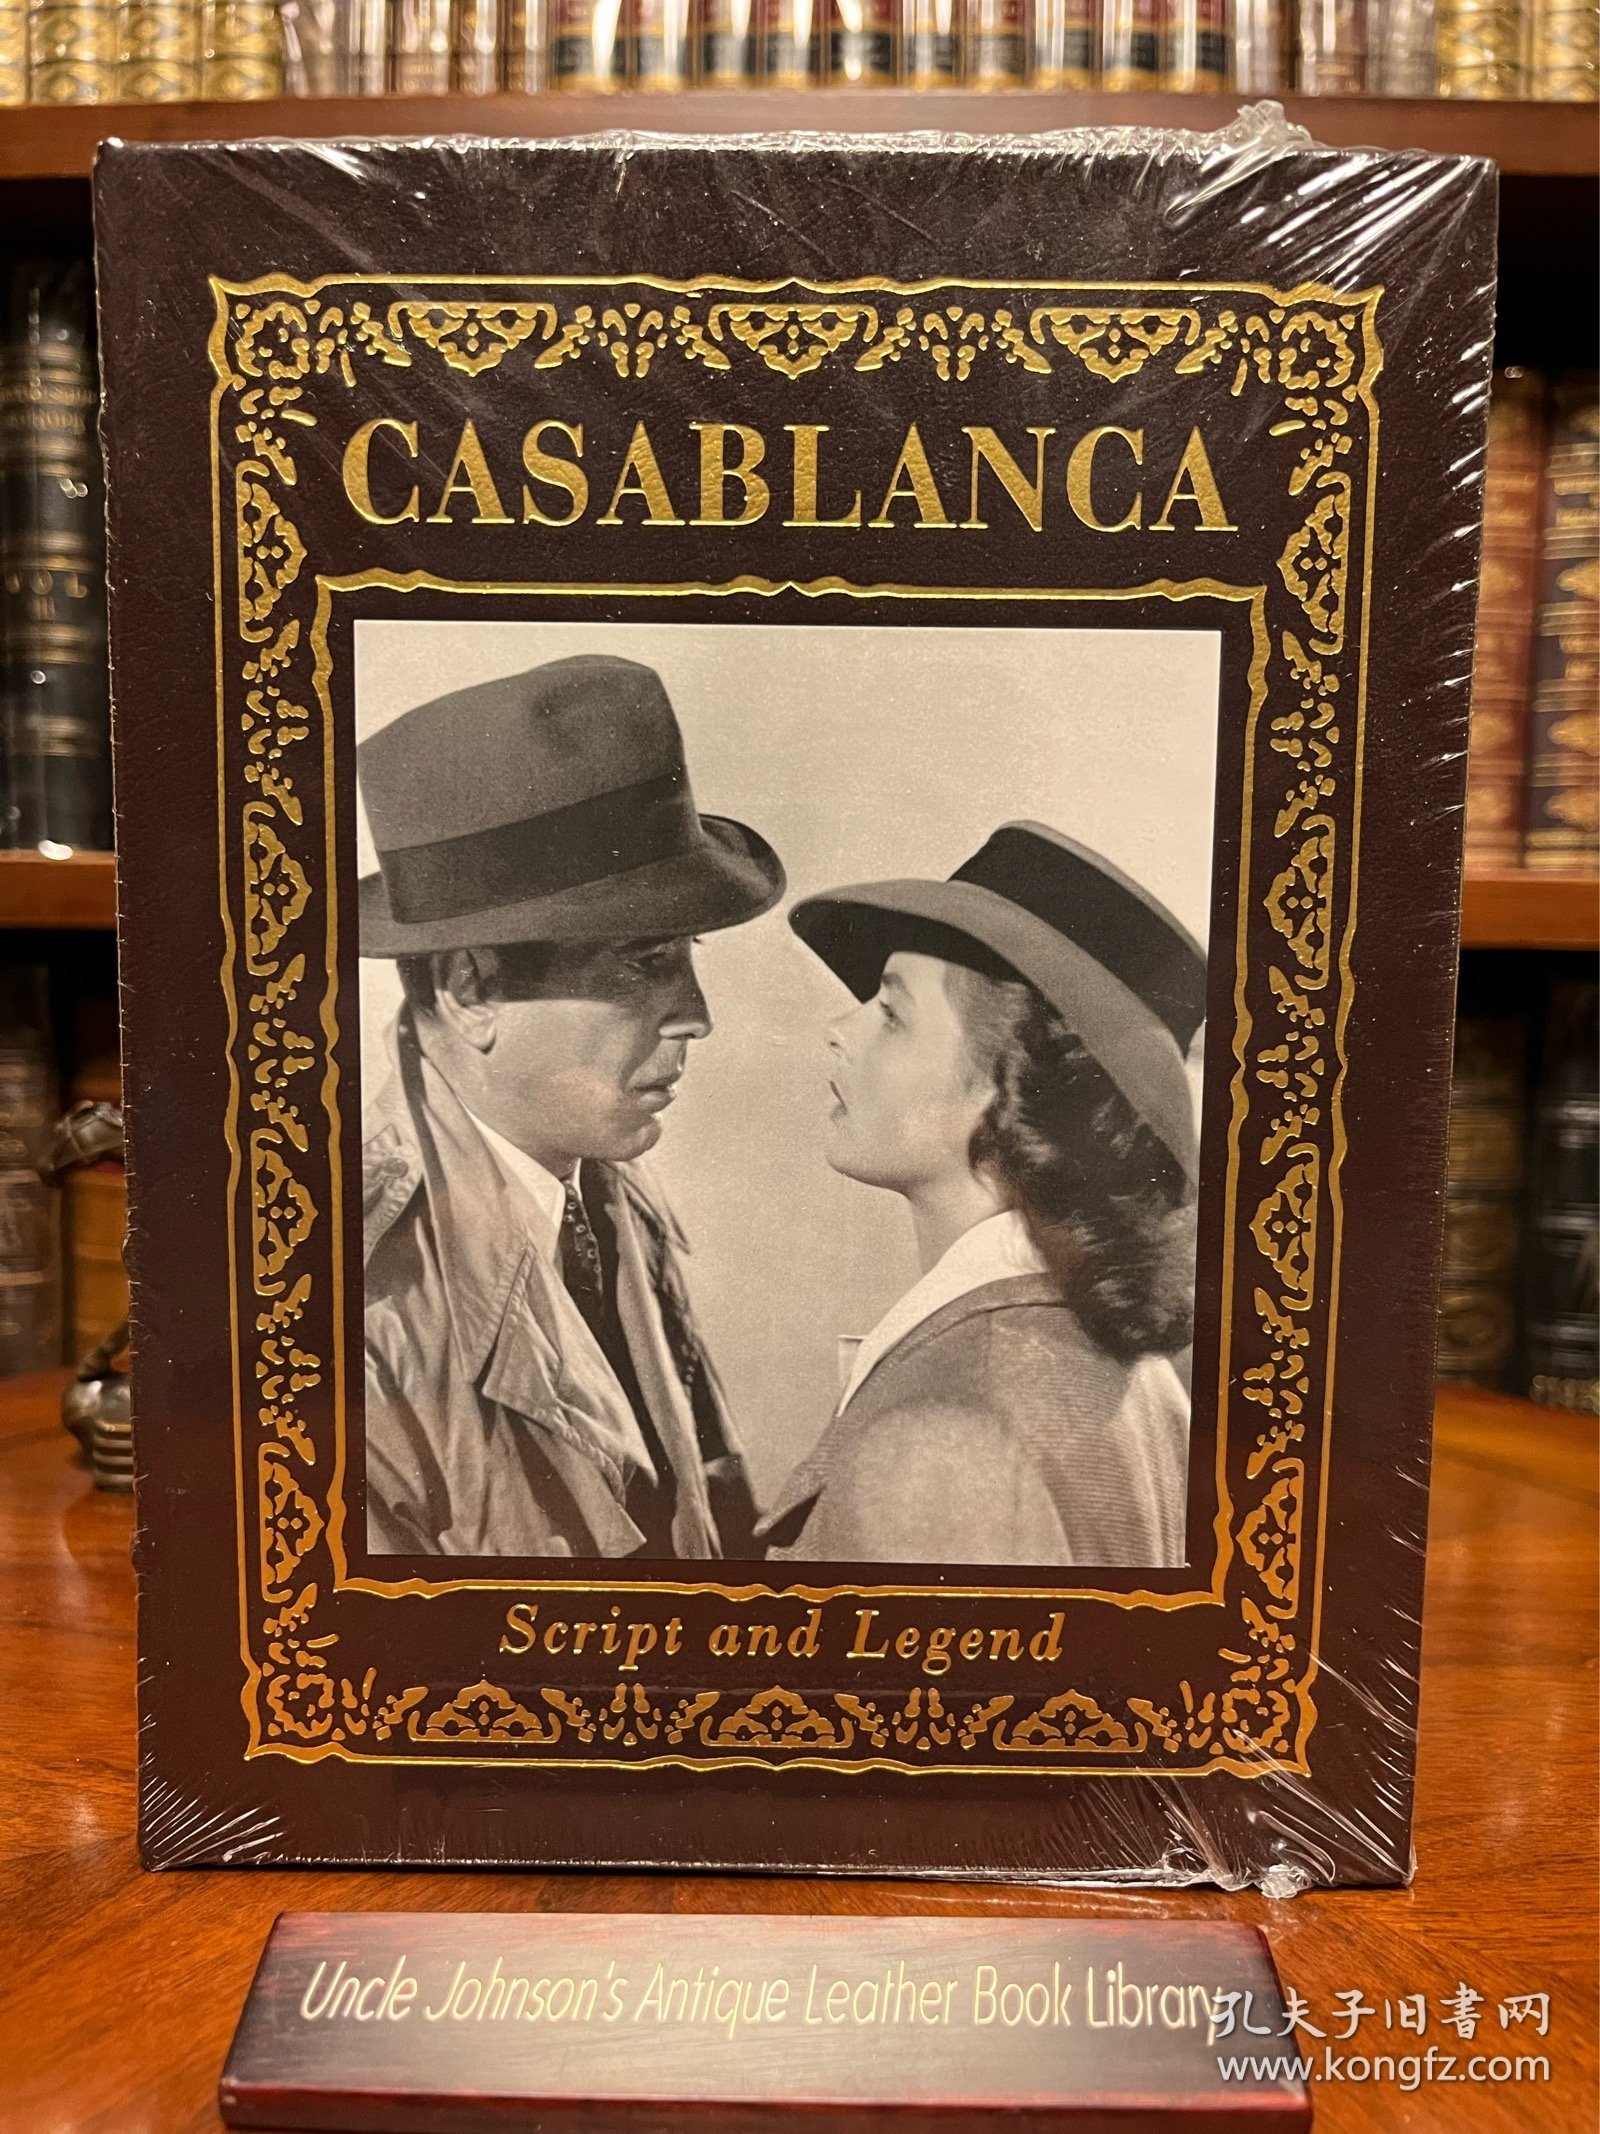 永恒的经典《卡萨布兰卡》Casablanca，北非谍影，1944年第16届奥斯卡最佳影片、最佳导演、最佳剧本三项奖项。美国好莱坞编剧协会评选了史上“101部最伟大的电影剧本”，该片排名第一位！女神英格丽褒曼眼中含泪的那一幕，已经深深刻在无数观众的心底…
Easton出版社真皮限量收藏版纪念册，经典场景重现…厚重大开本，全新未开封，稀缺品类难得一见，可遇不可求的完美藏品。